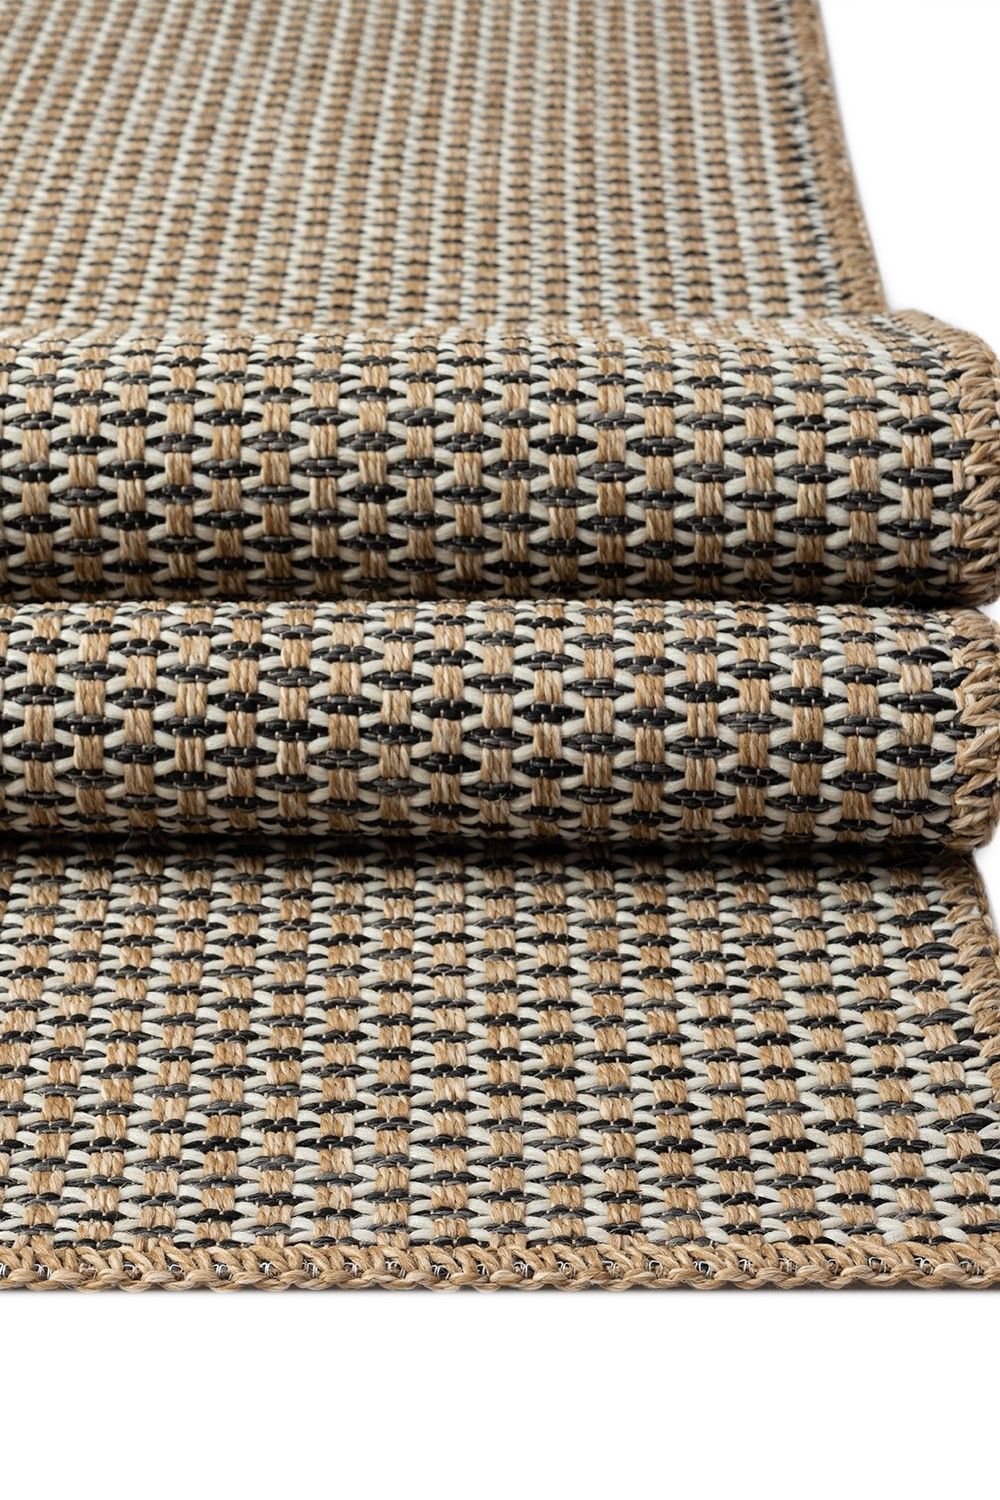 Friolero 2575 - Carpet (160 x 230)